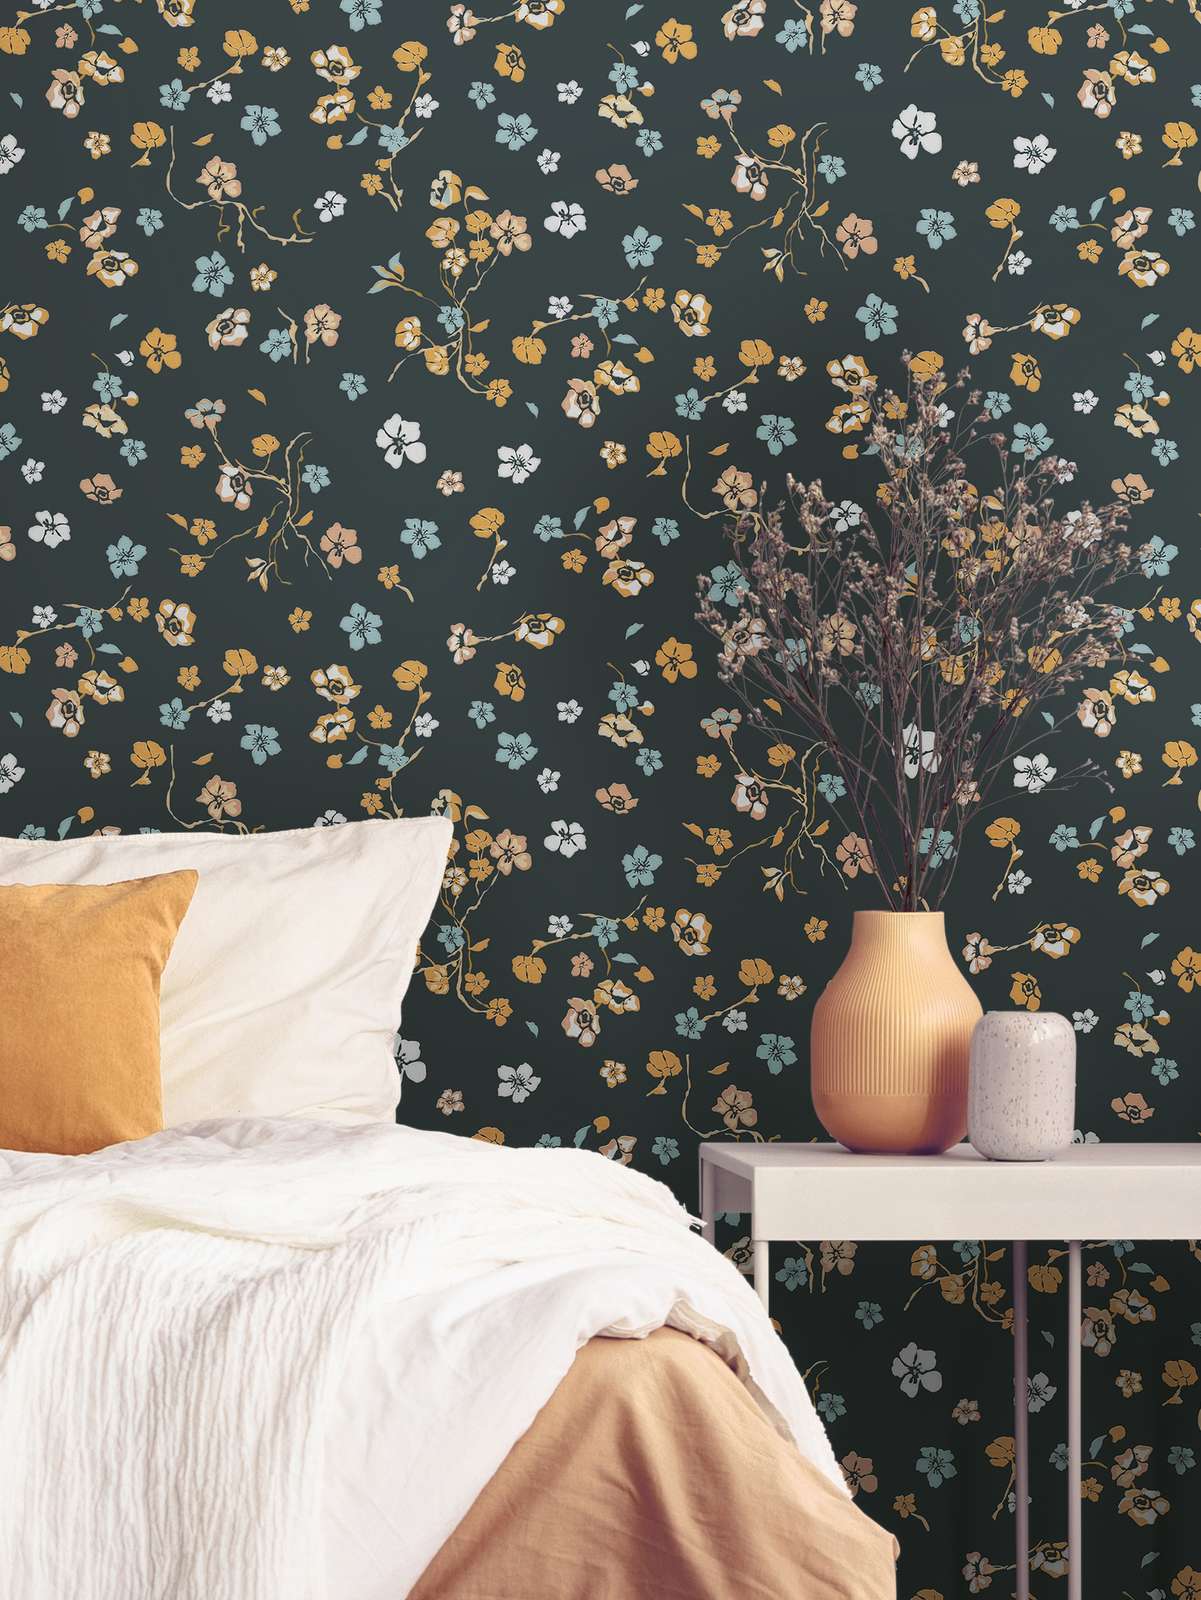             Bloemenbehang met glanzend effect & structuurpatroon - zwart, goud, turkoois
        